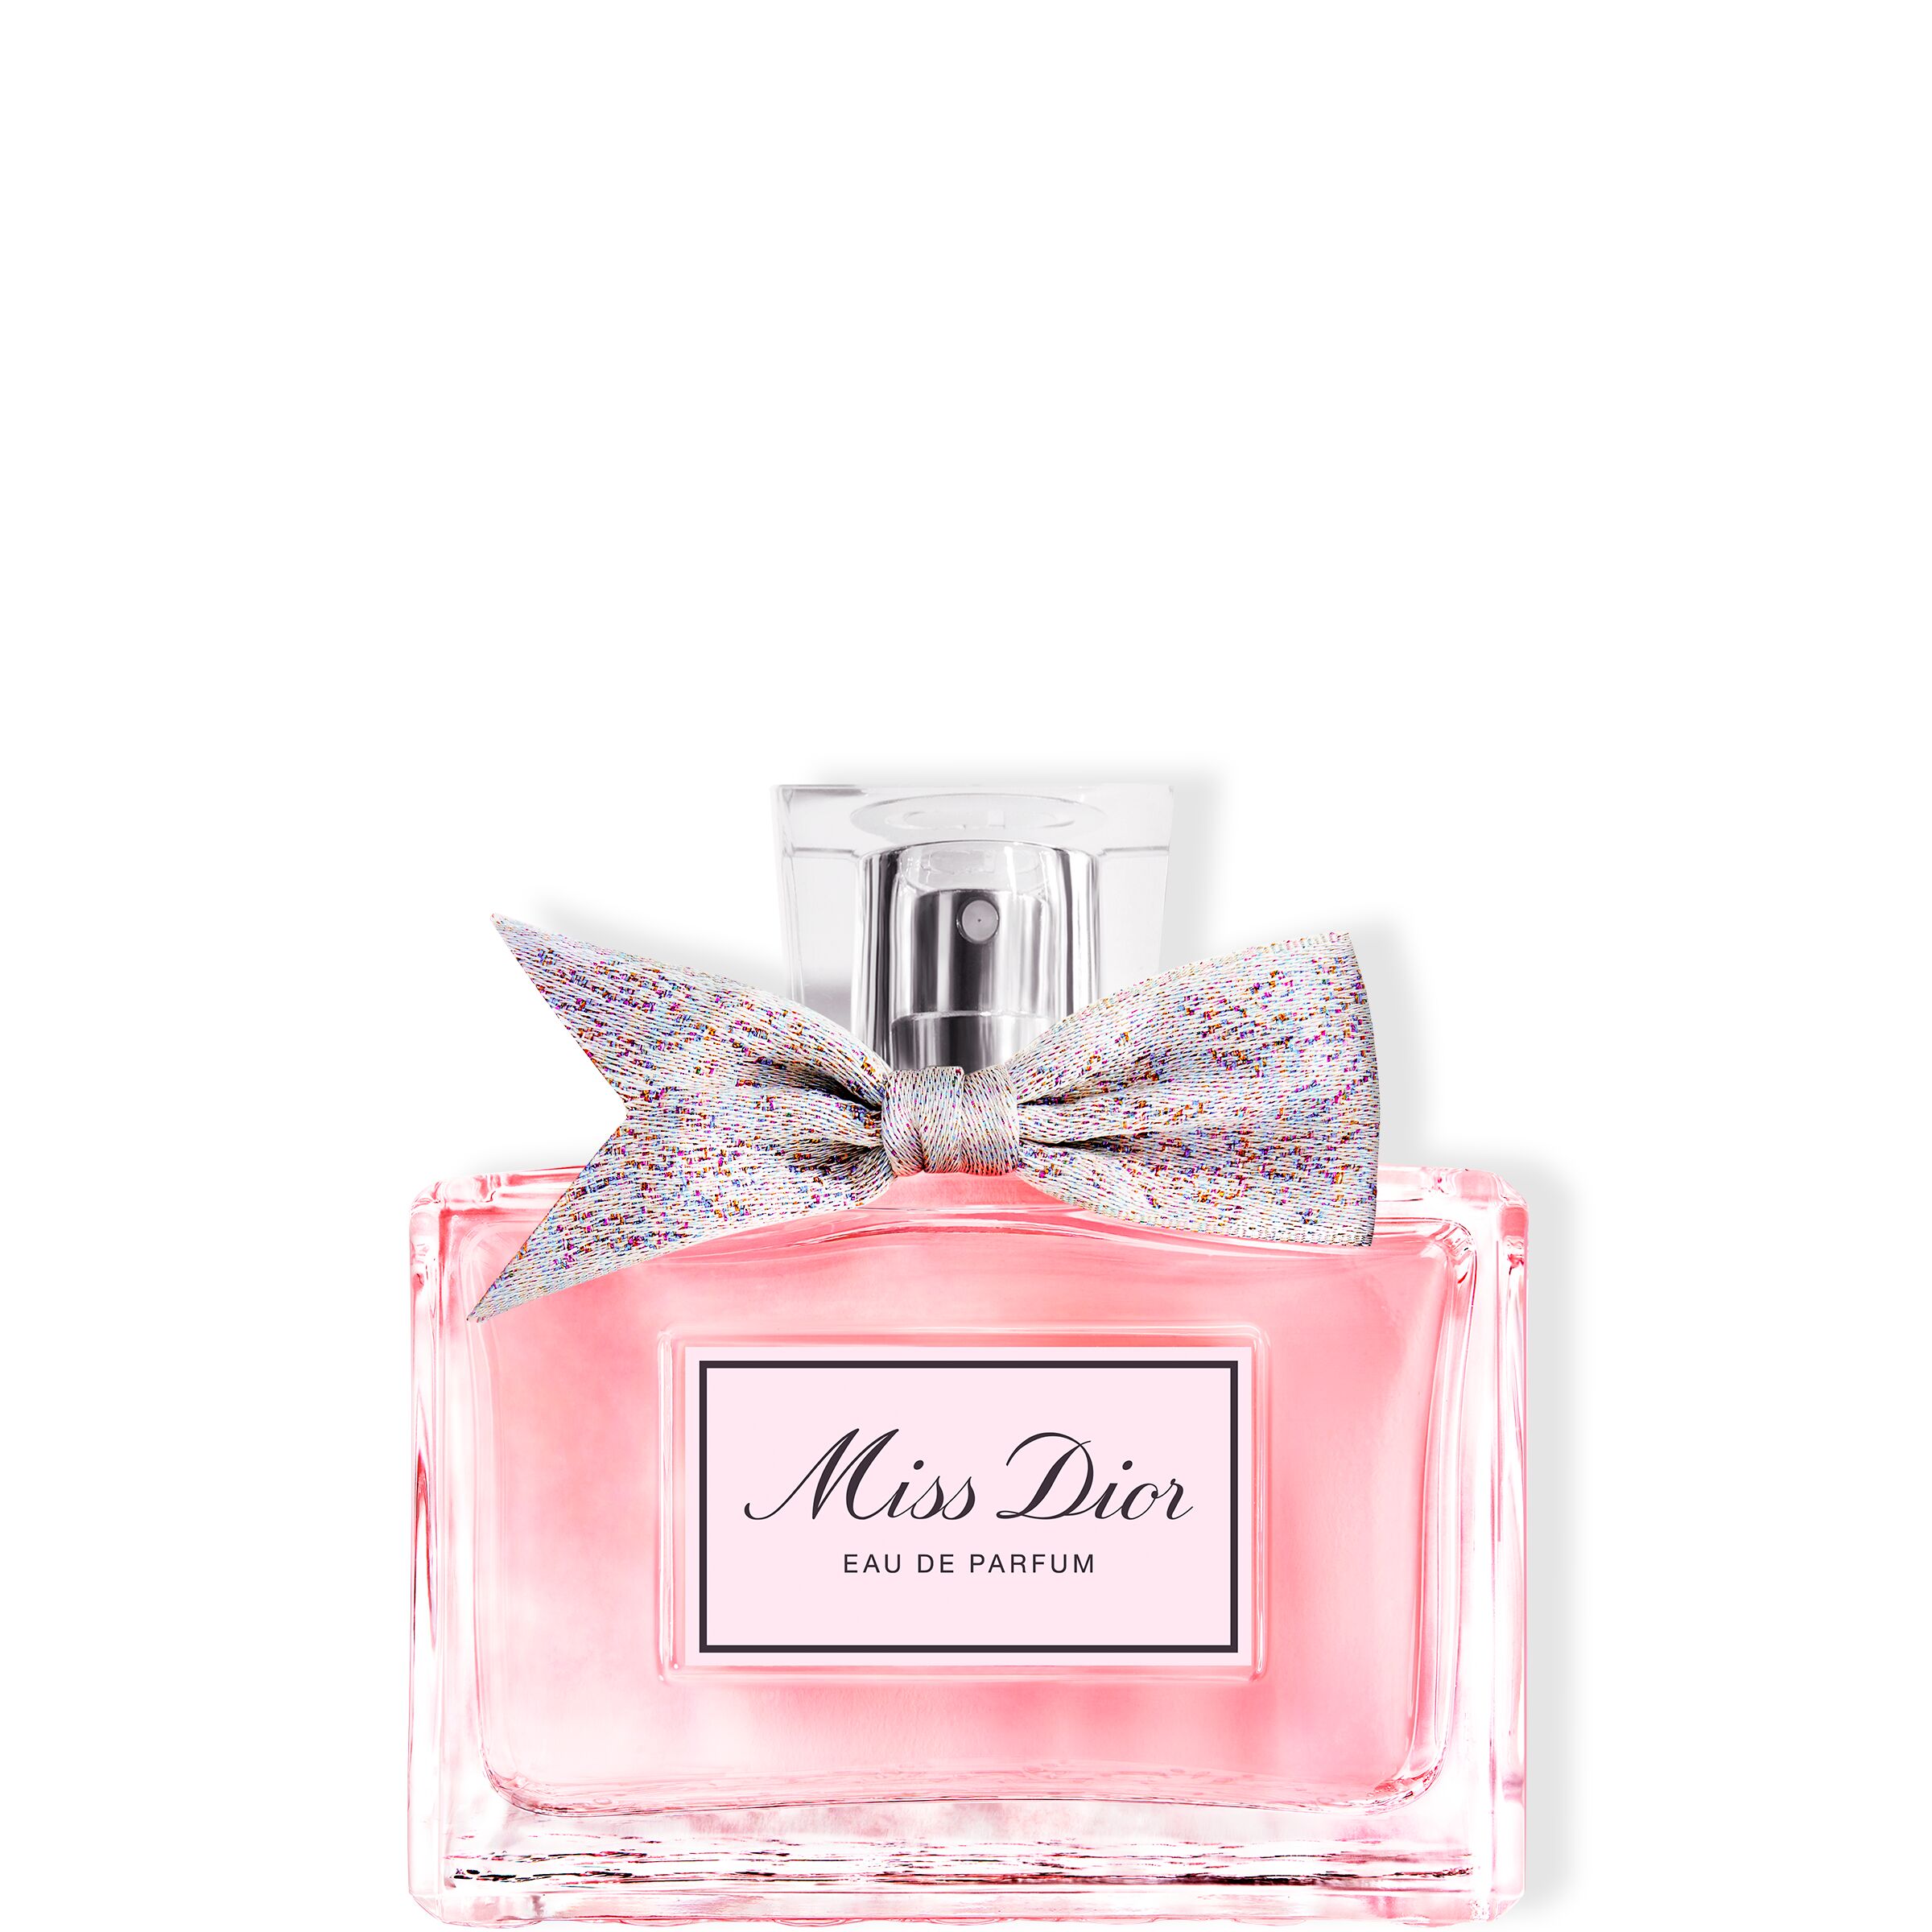  Miss Eau De Parfum, 50 ml